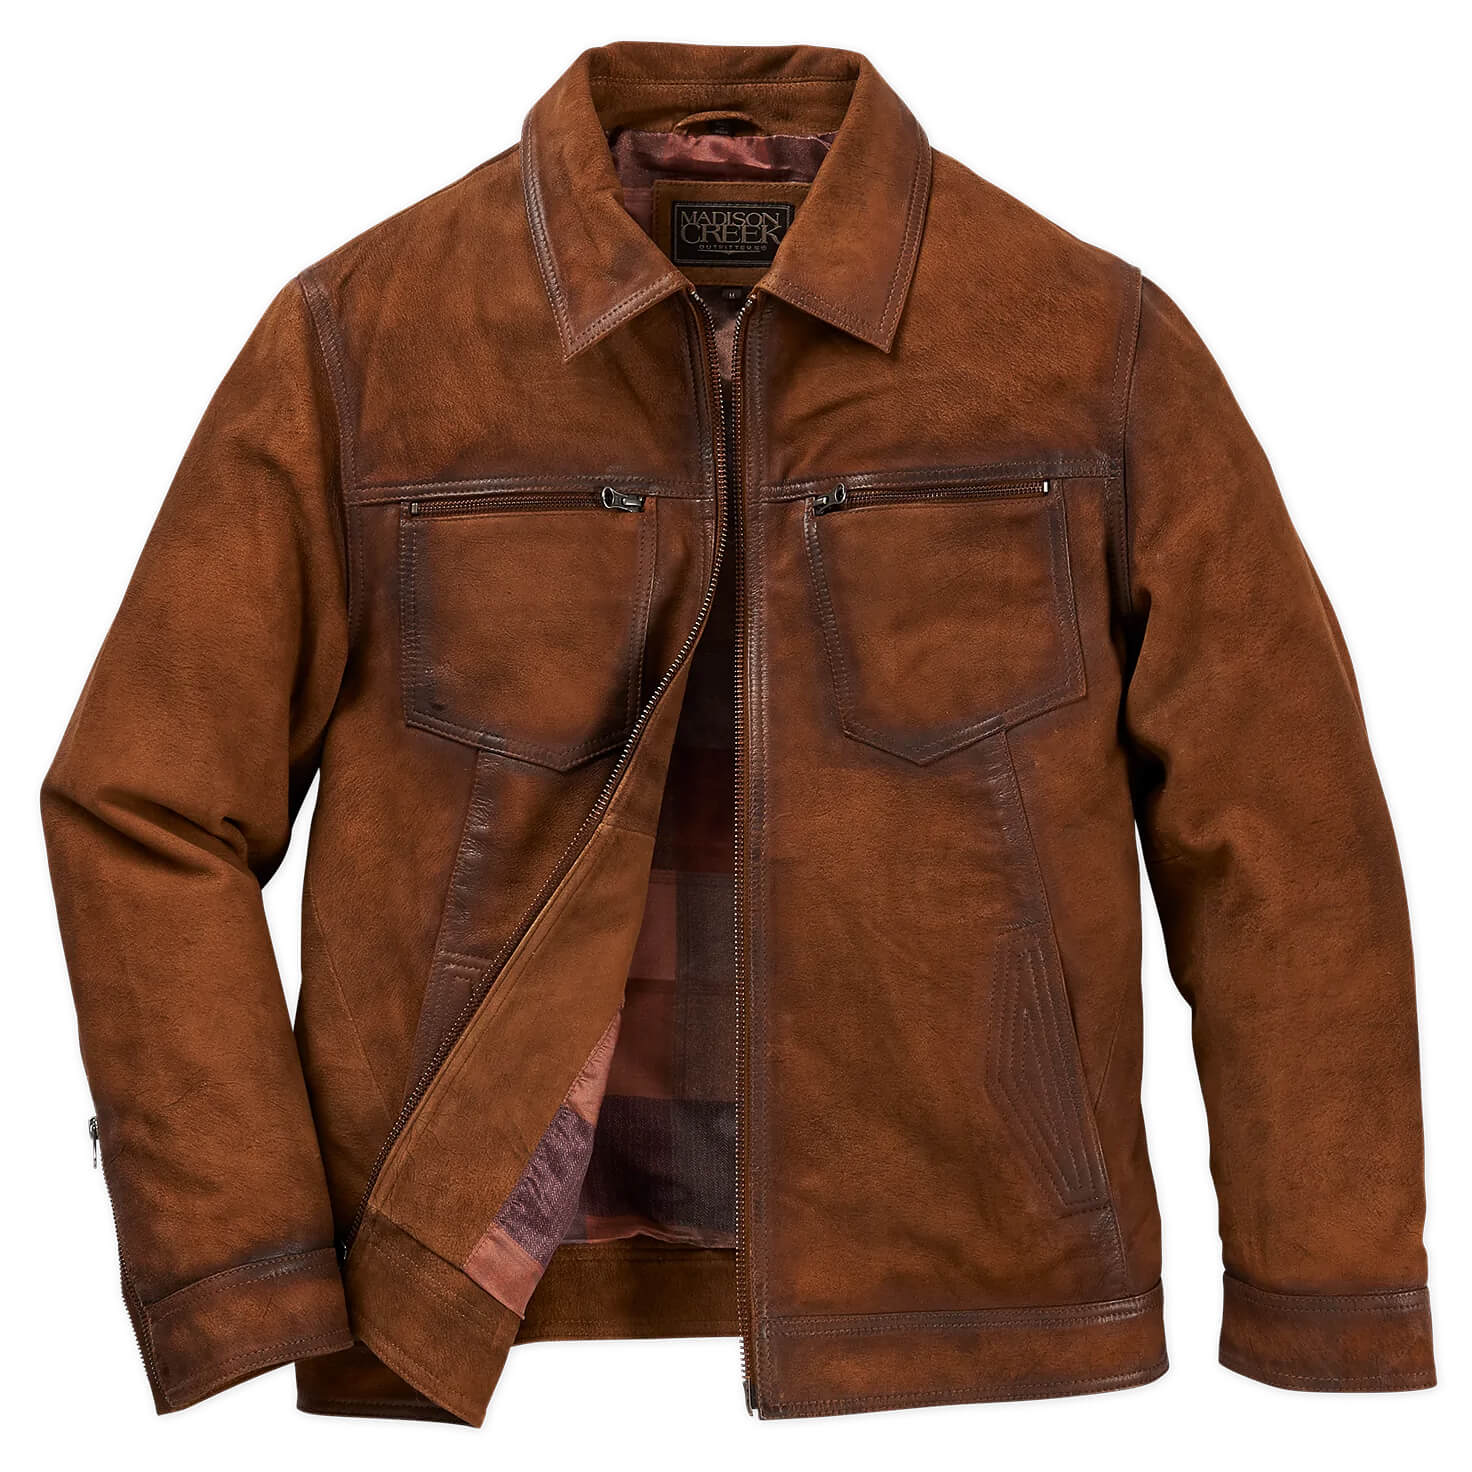 Men's Brown Suede Leather Jacket Slim fit Biker Motorcycle Jacket - FL111 |  eBay